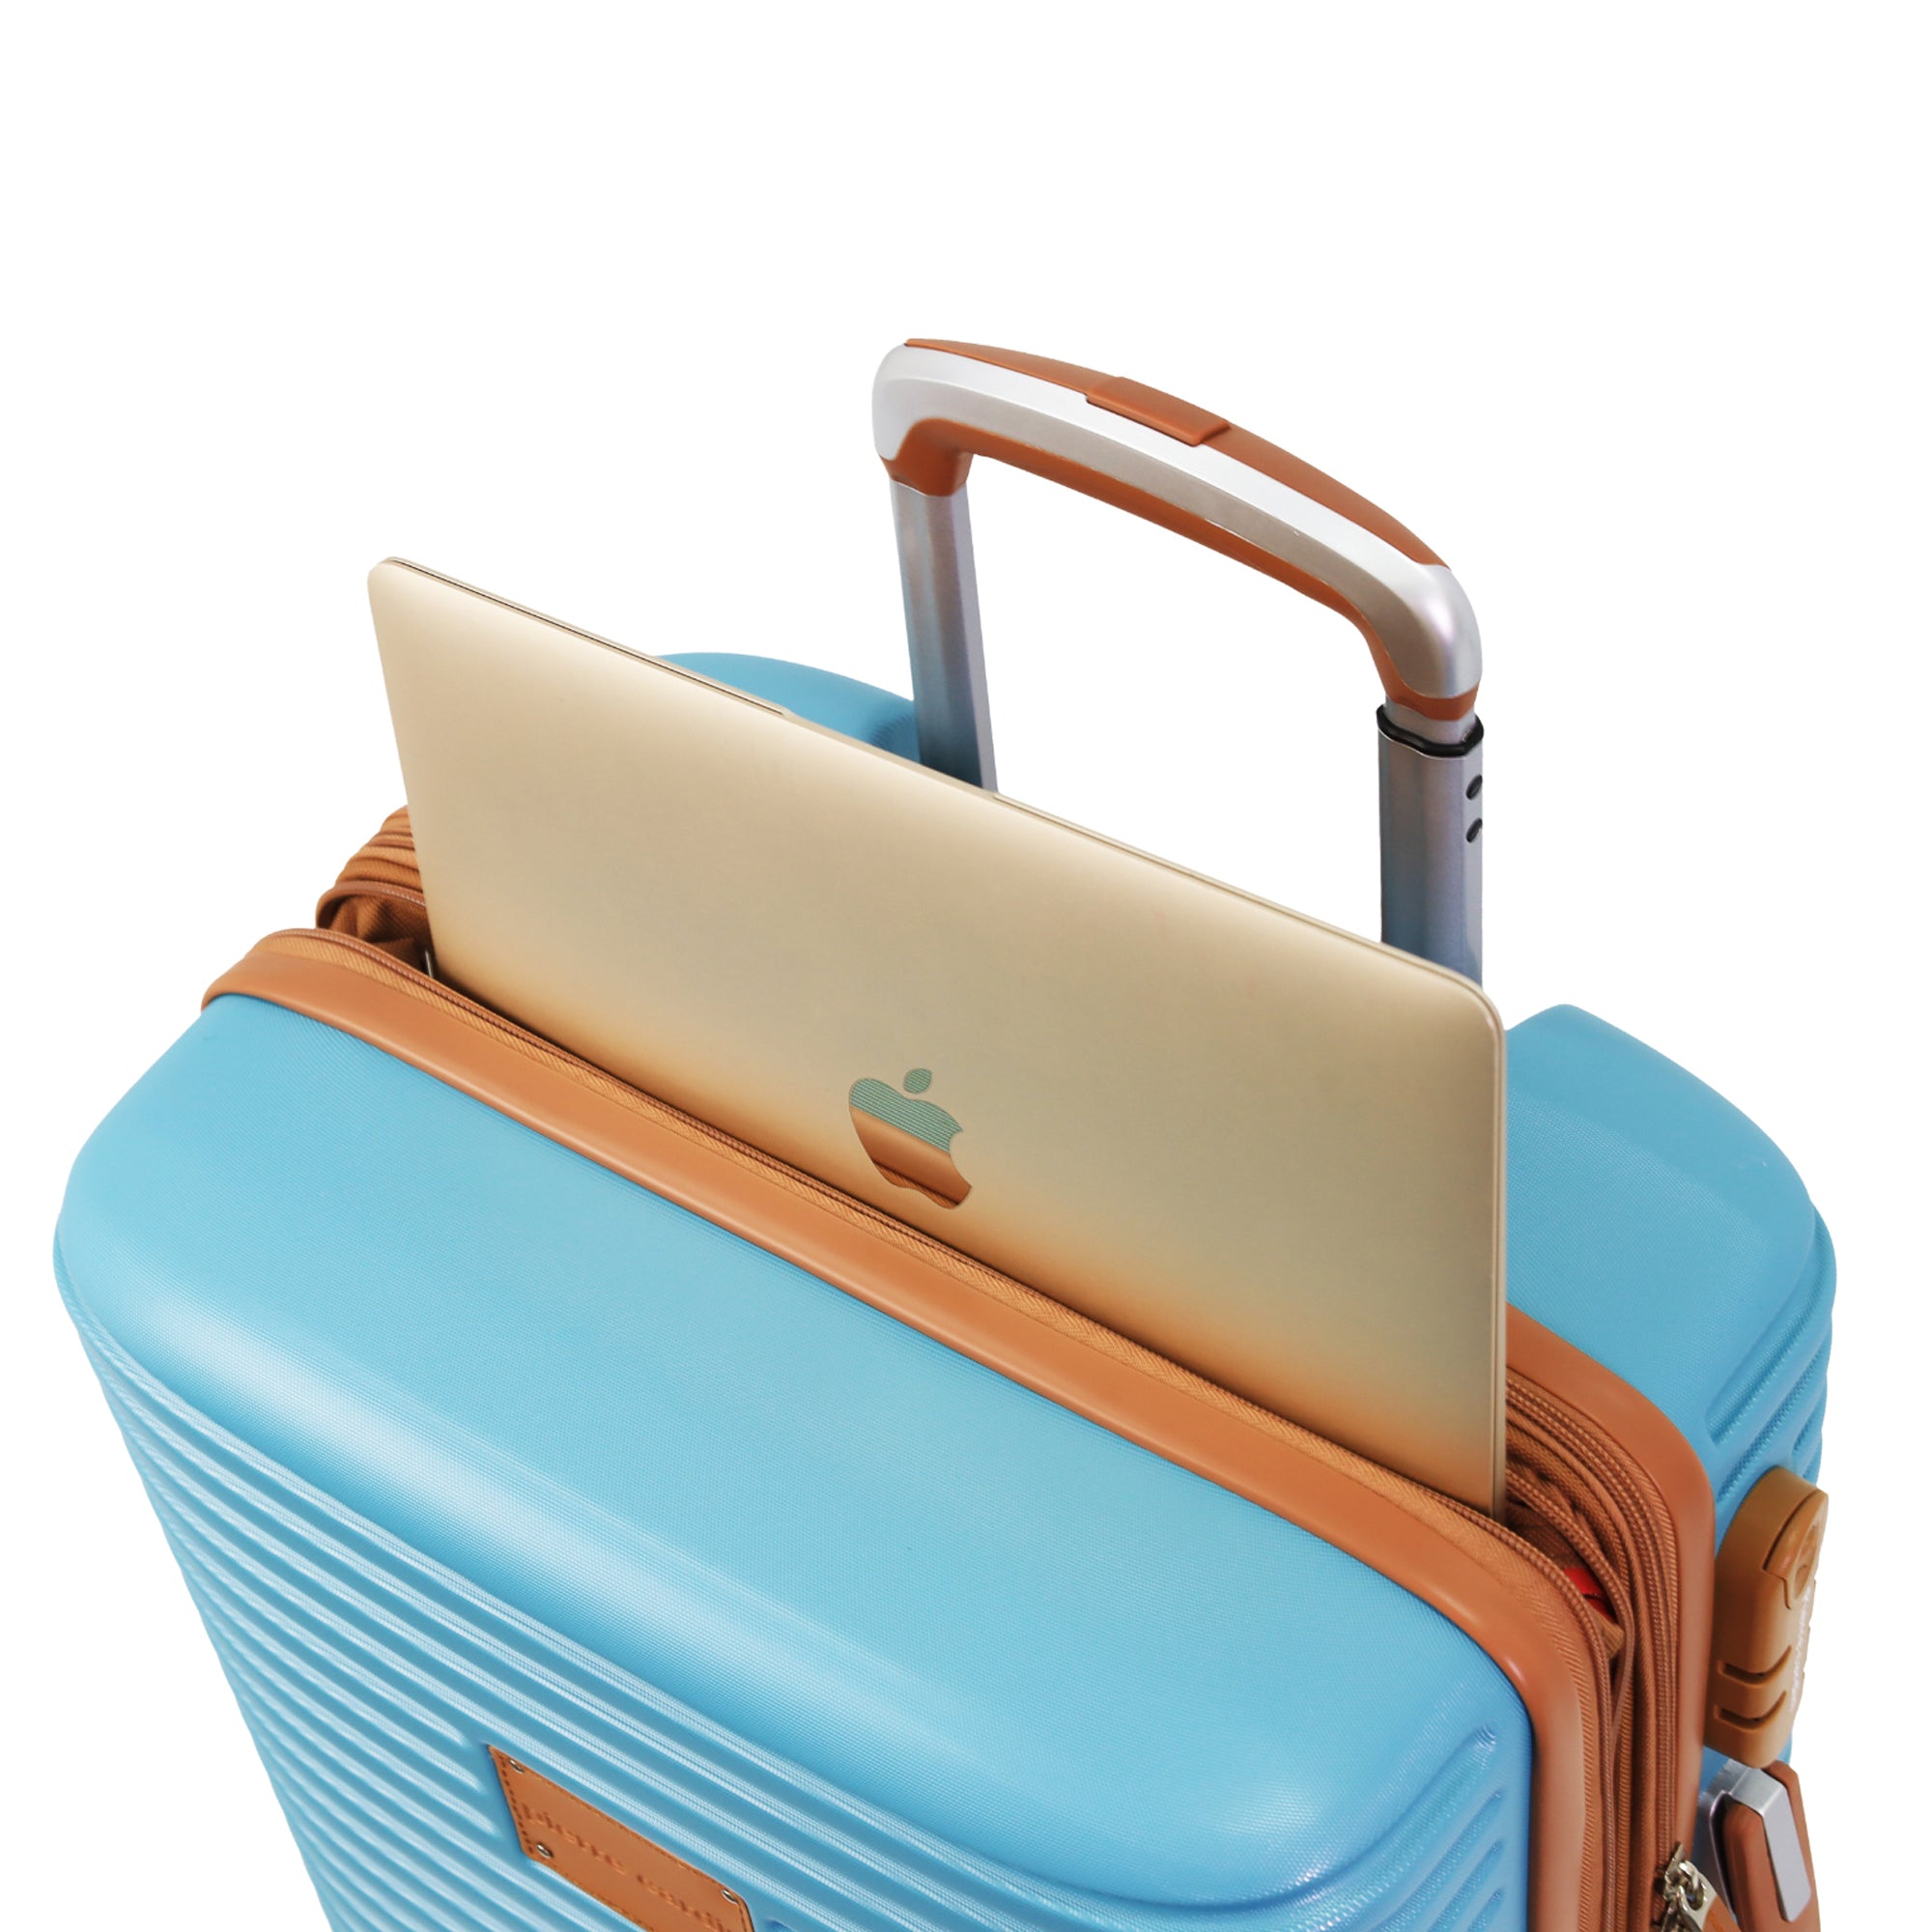 Pierre Cardin 54cm CABIN Hard Shell Suitcase in Blue